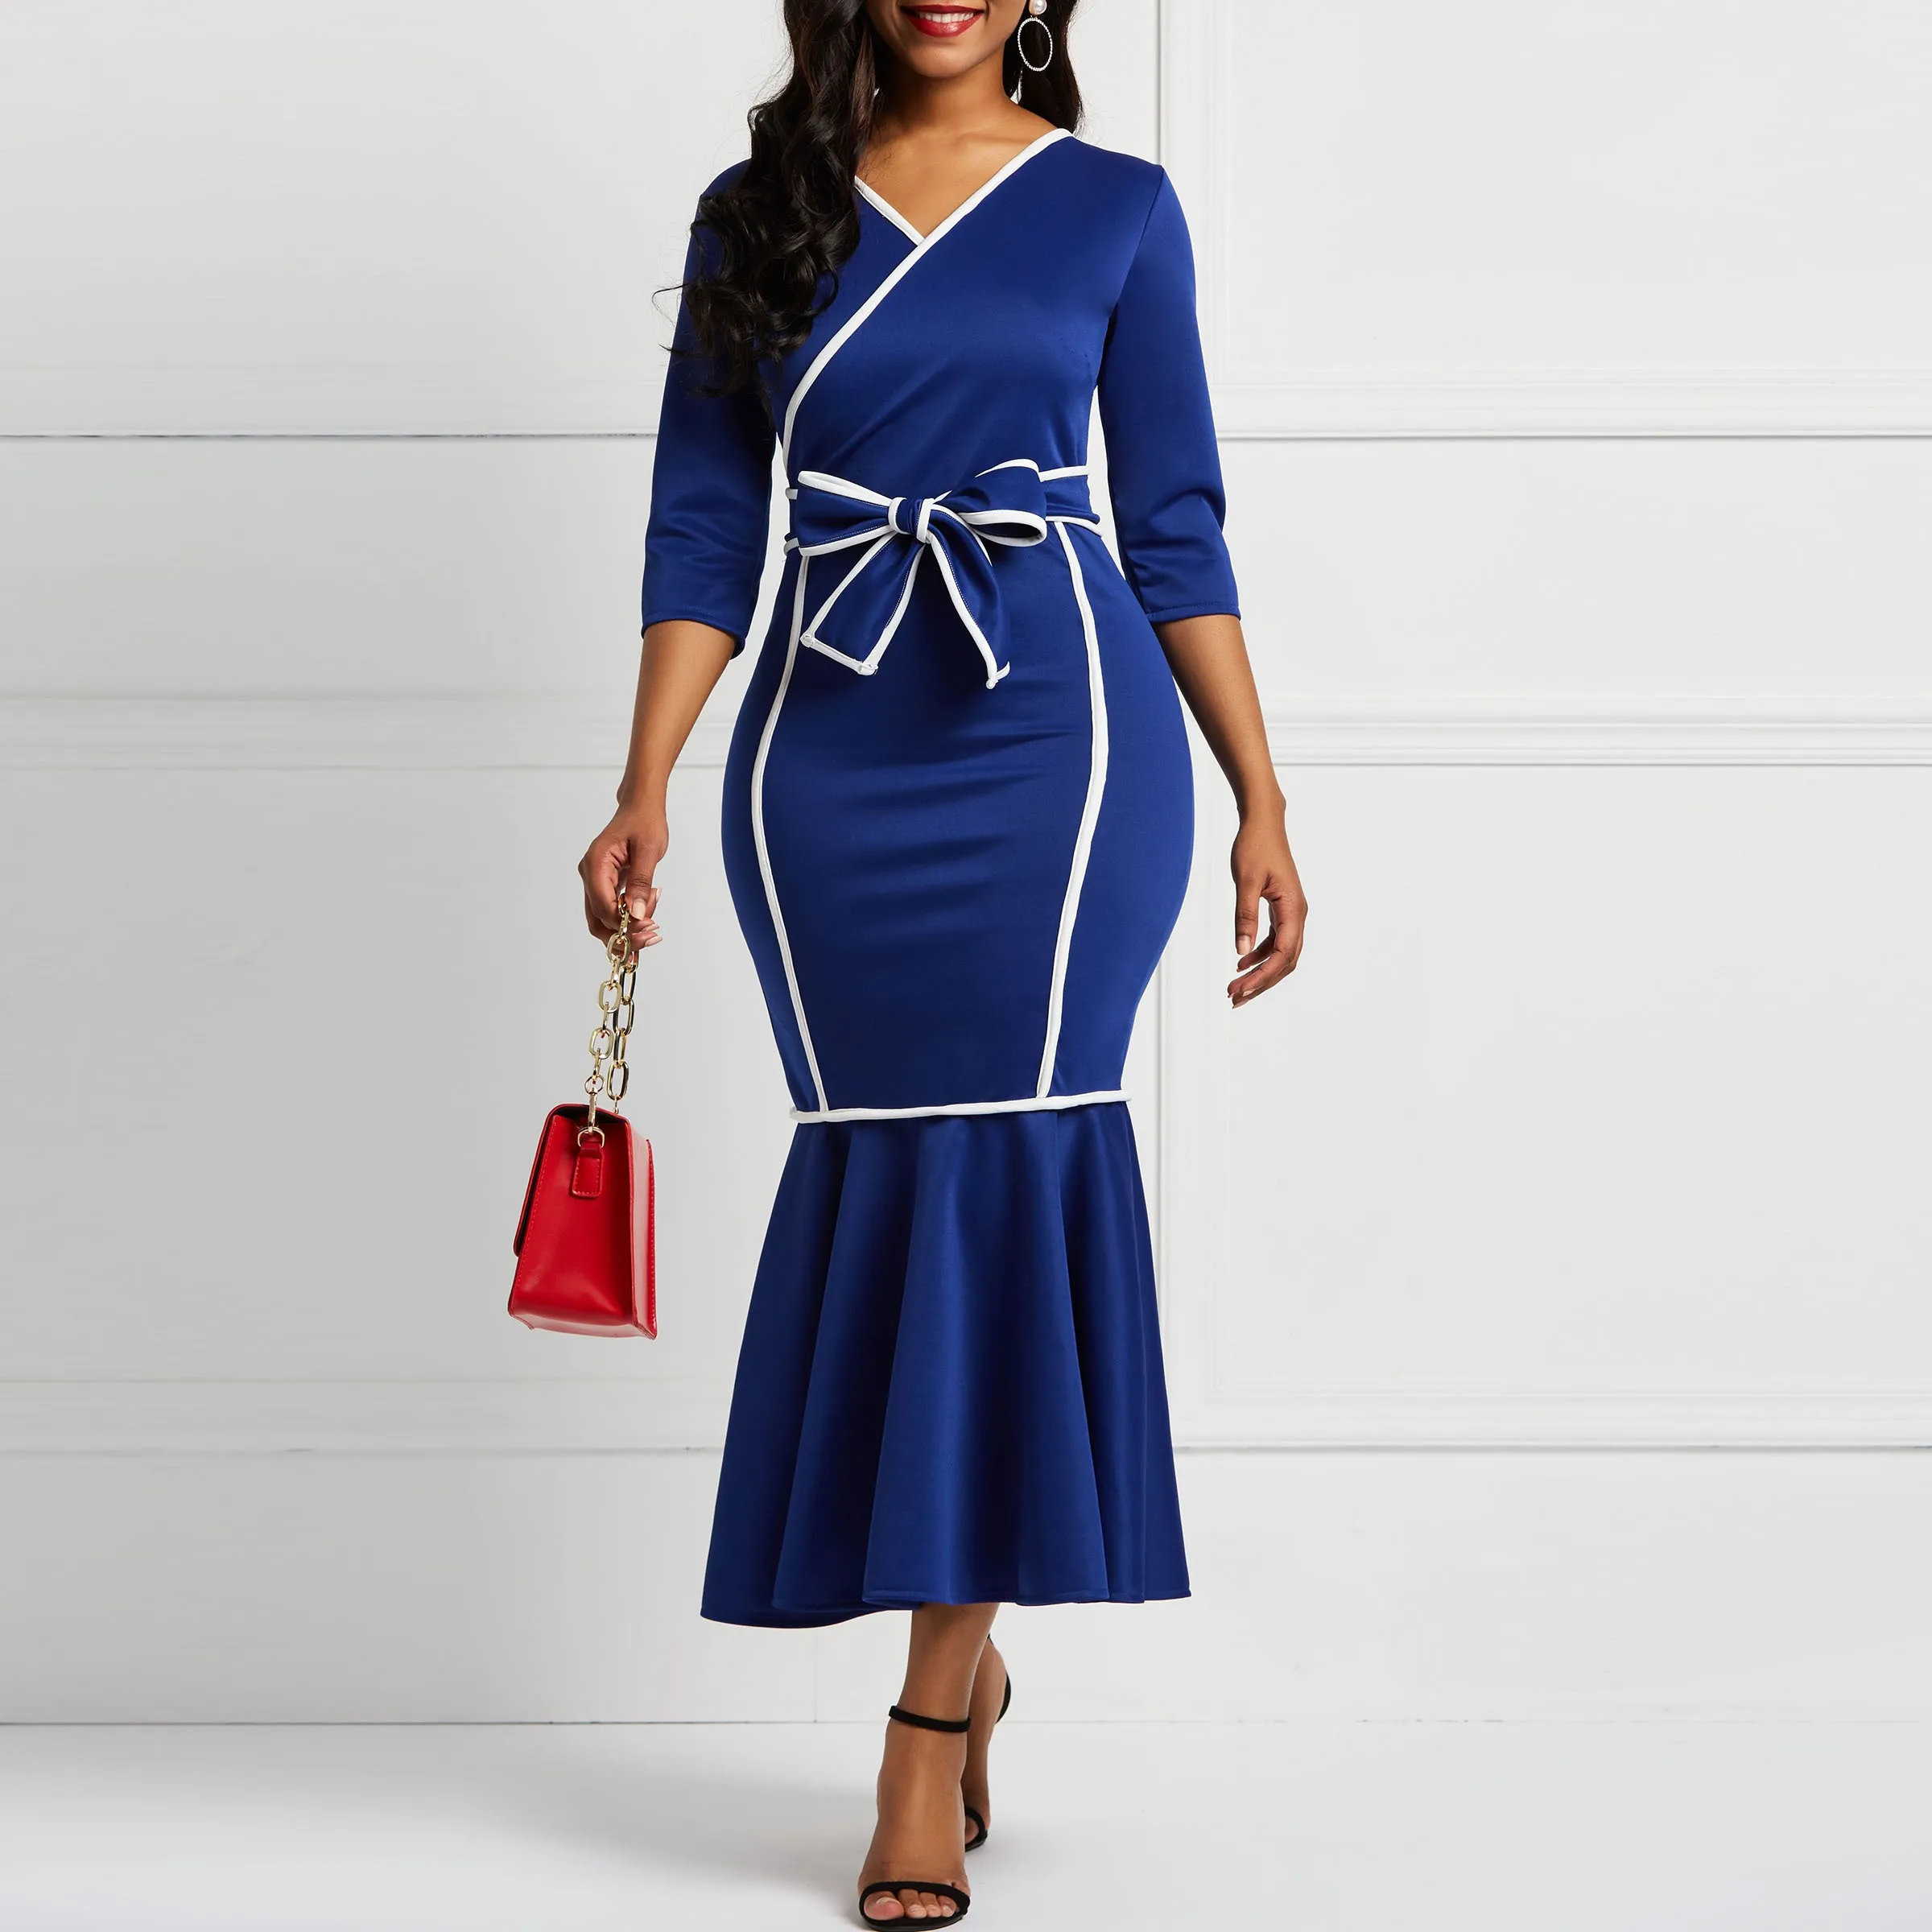 Женское платье с длинным рукавом Русалка Falbala v-образным вырезом цвет блок женские миди платья бант элегантное женское вечернее платье - Цвет: Синий